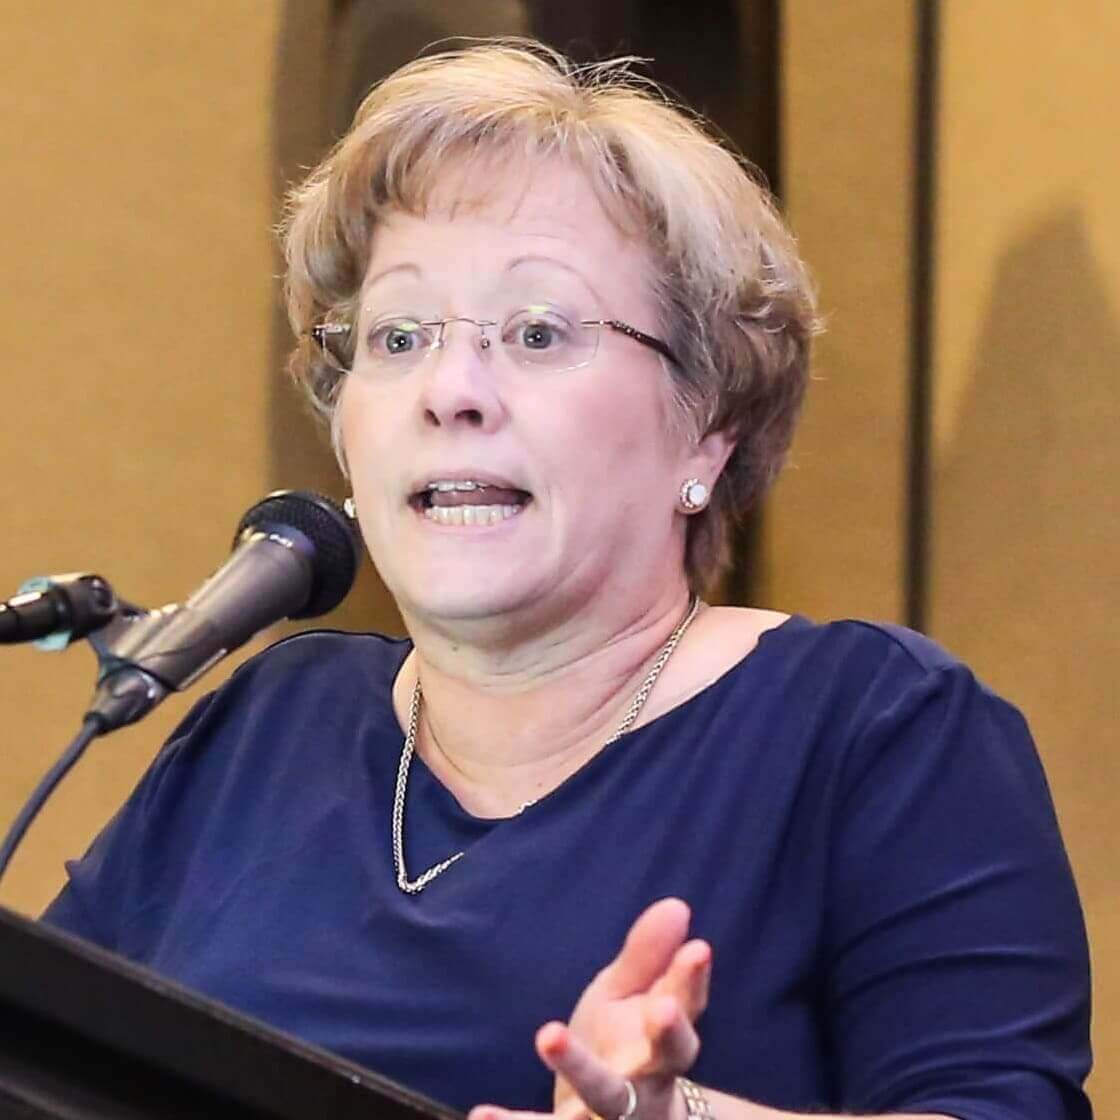 Speaker at Nursing conferences